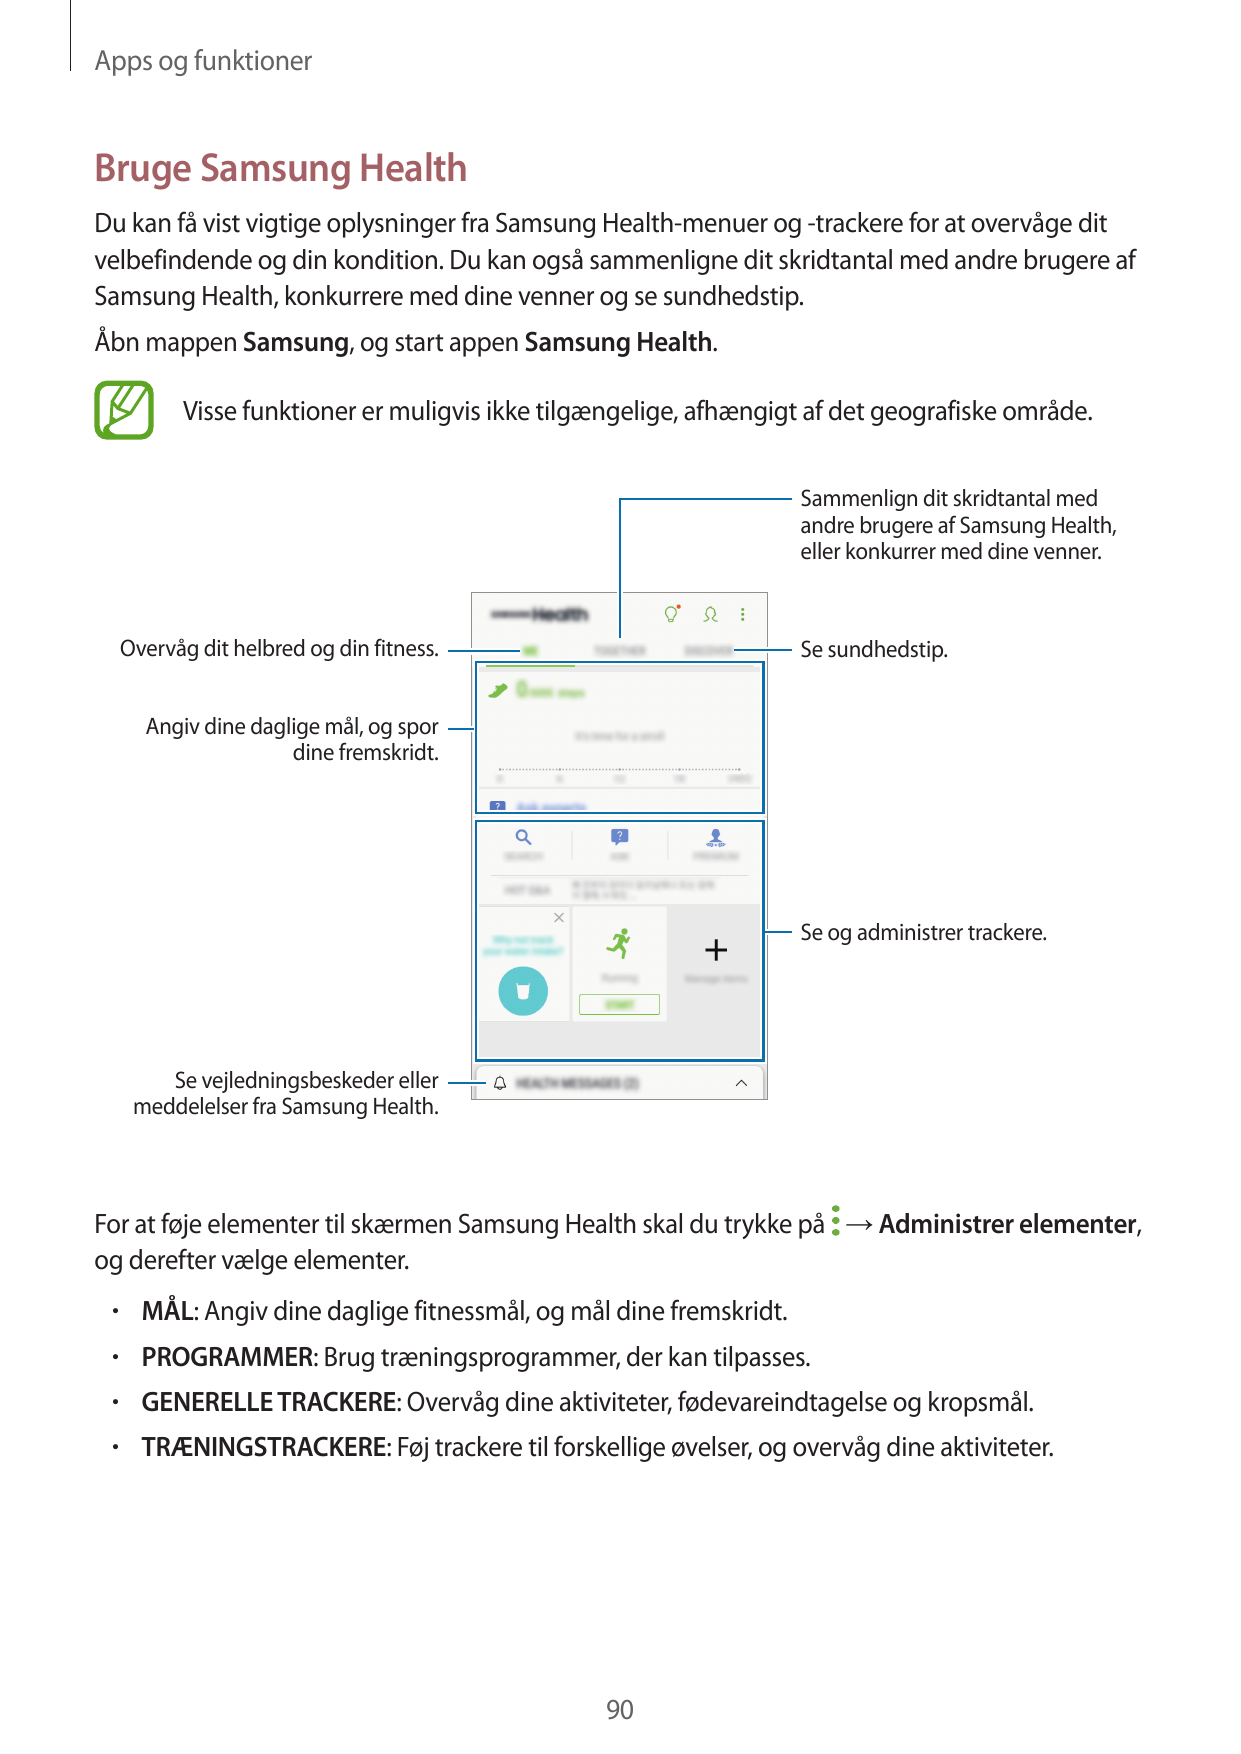 Apps og funktionerBruge Samsung HealthDu kan få vist vigtige oplysninger fra Samsung Health-menuer og -trackere for at overvåge 